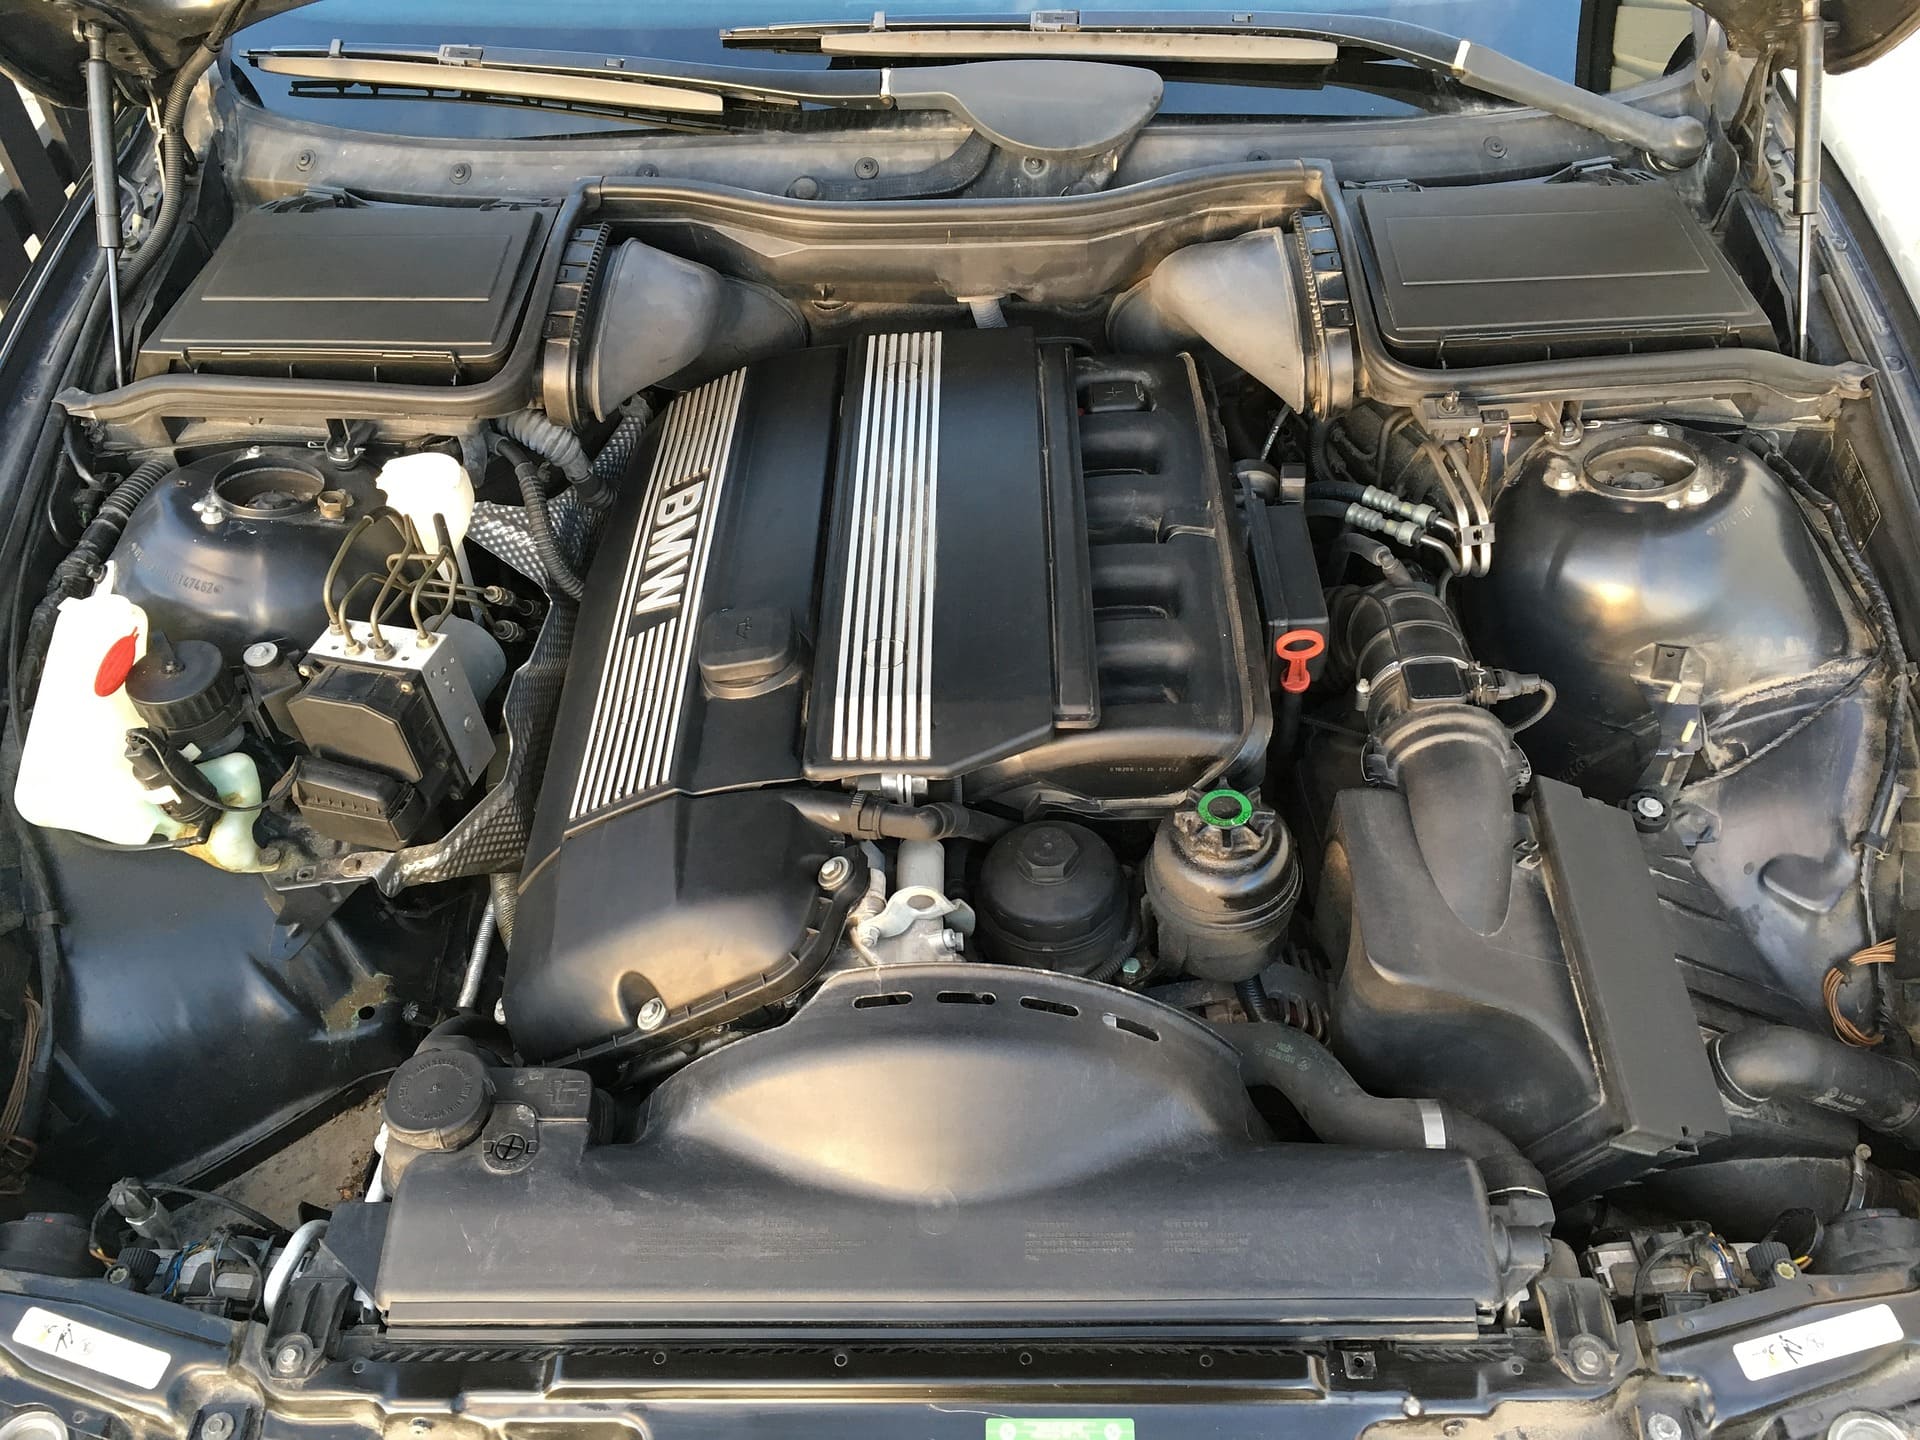 Abbildung zeigt in einem geöffneten Motorraum einen BMW 6 Zylinder Motor, welcher bereit für den BMW Service ist